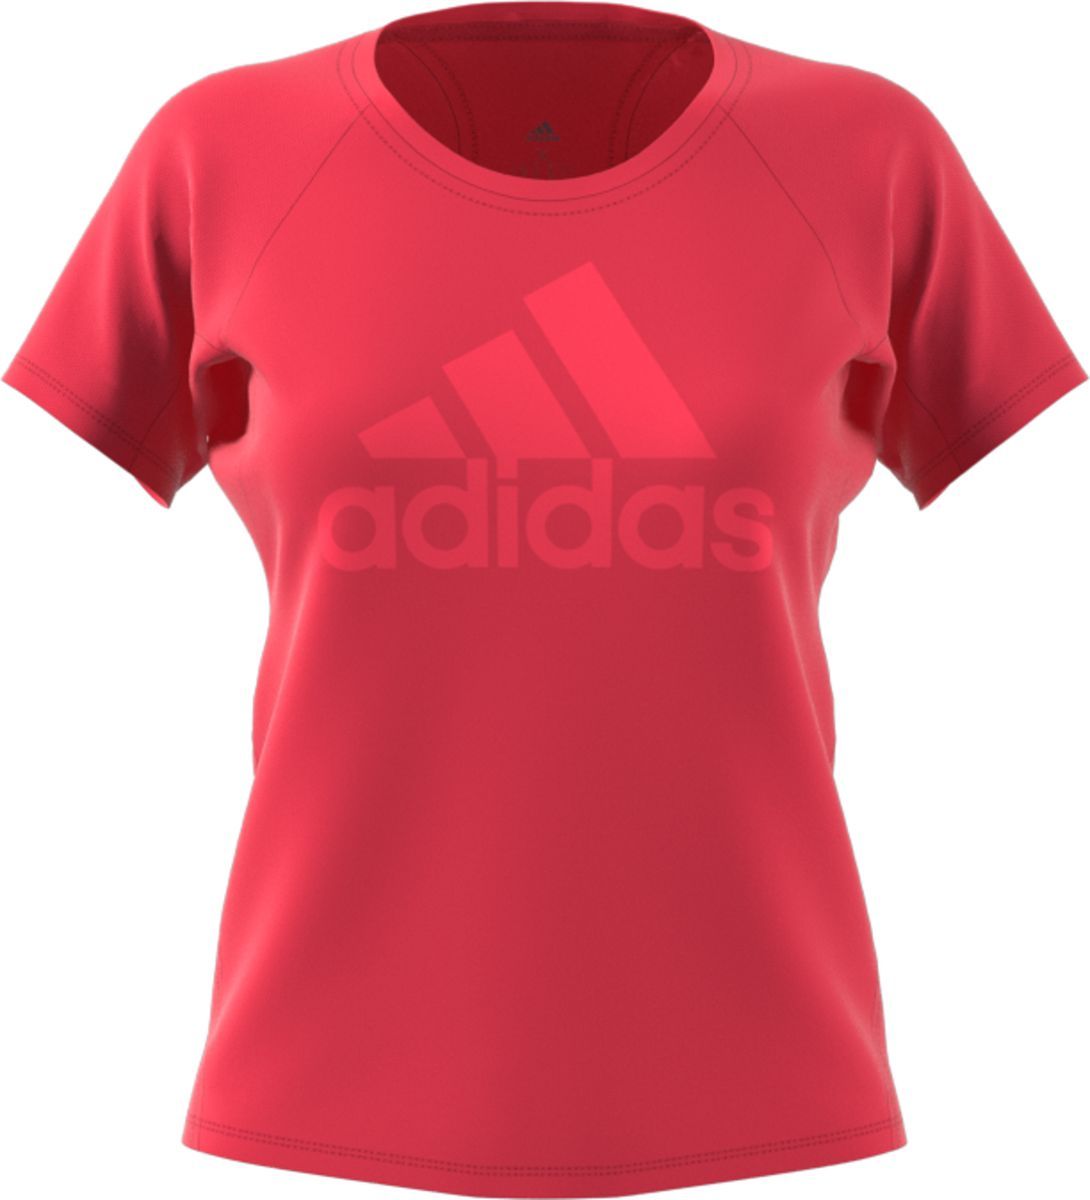   Adidas Trng Tee Logo, : . DX3710.  XS (40/42)